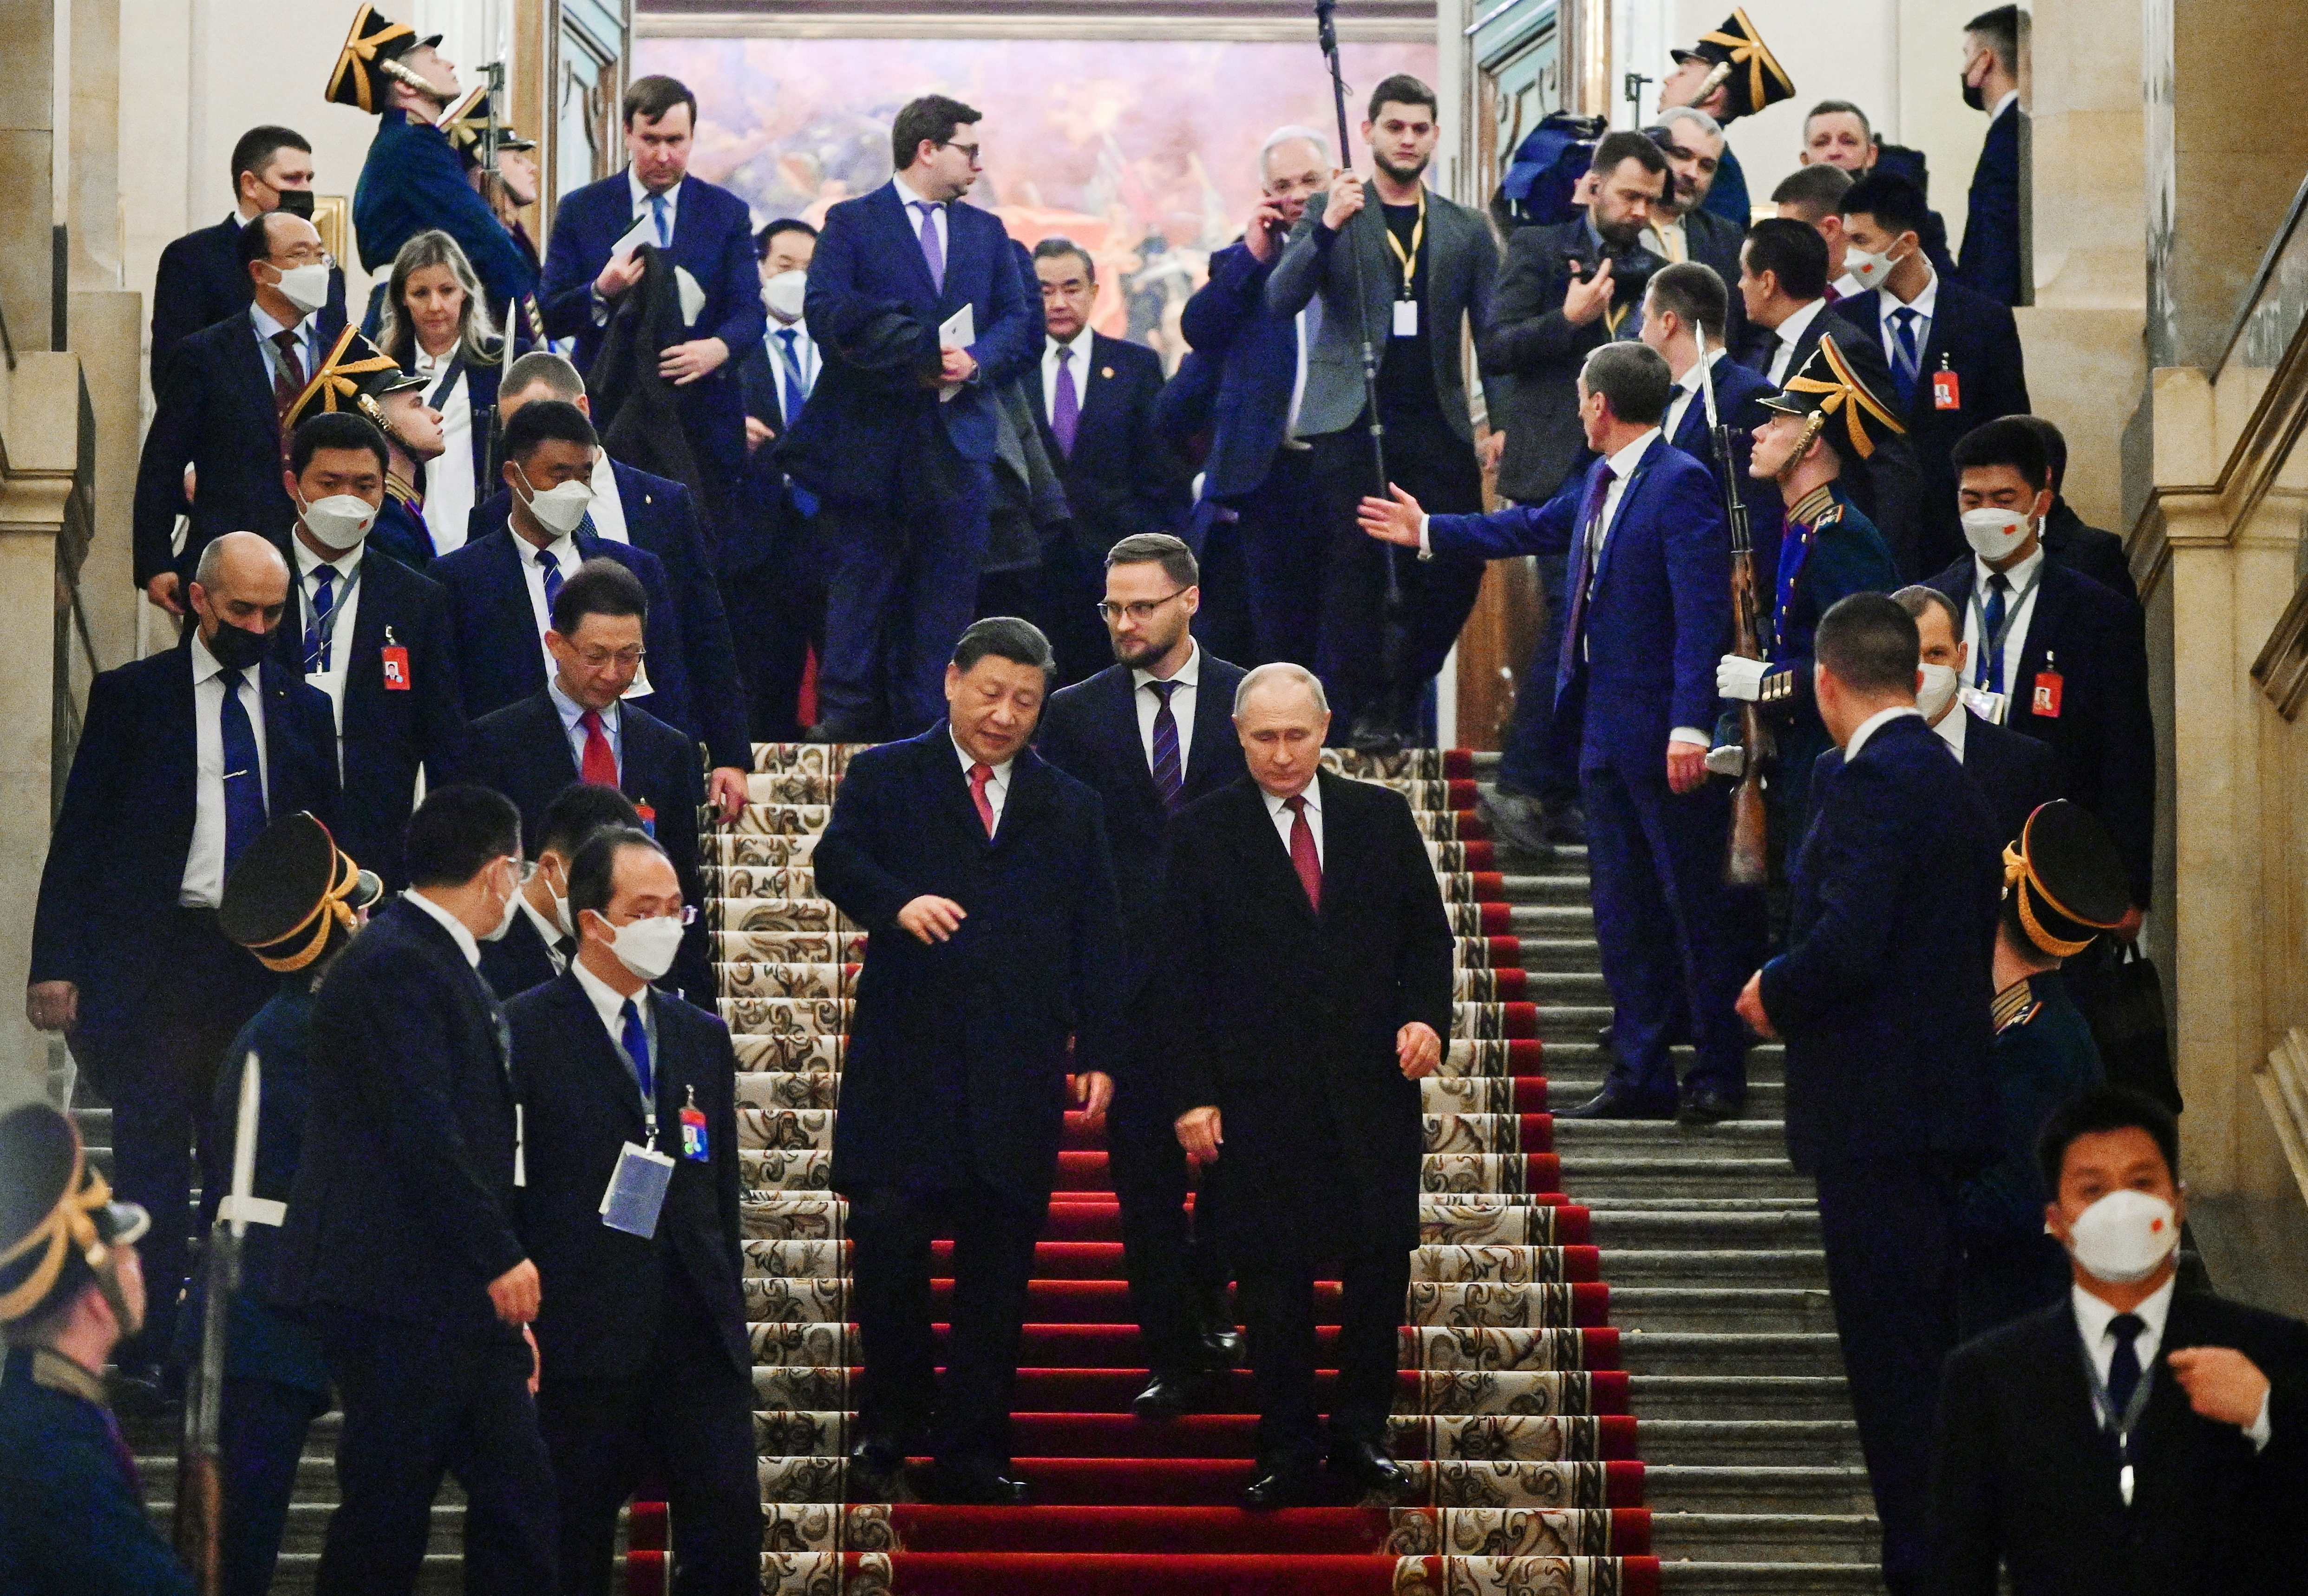 Los mandatarios caminaron frente a una hilera de funcionarios rusos y chinos para sostener su reunión. Putin y Xi vestían trajes negros y corbatas rojo oscuro. (Sputnik/Pavel Byrkin/Kremlin via REUTERS)